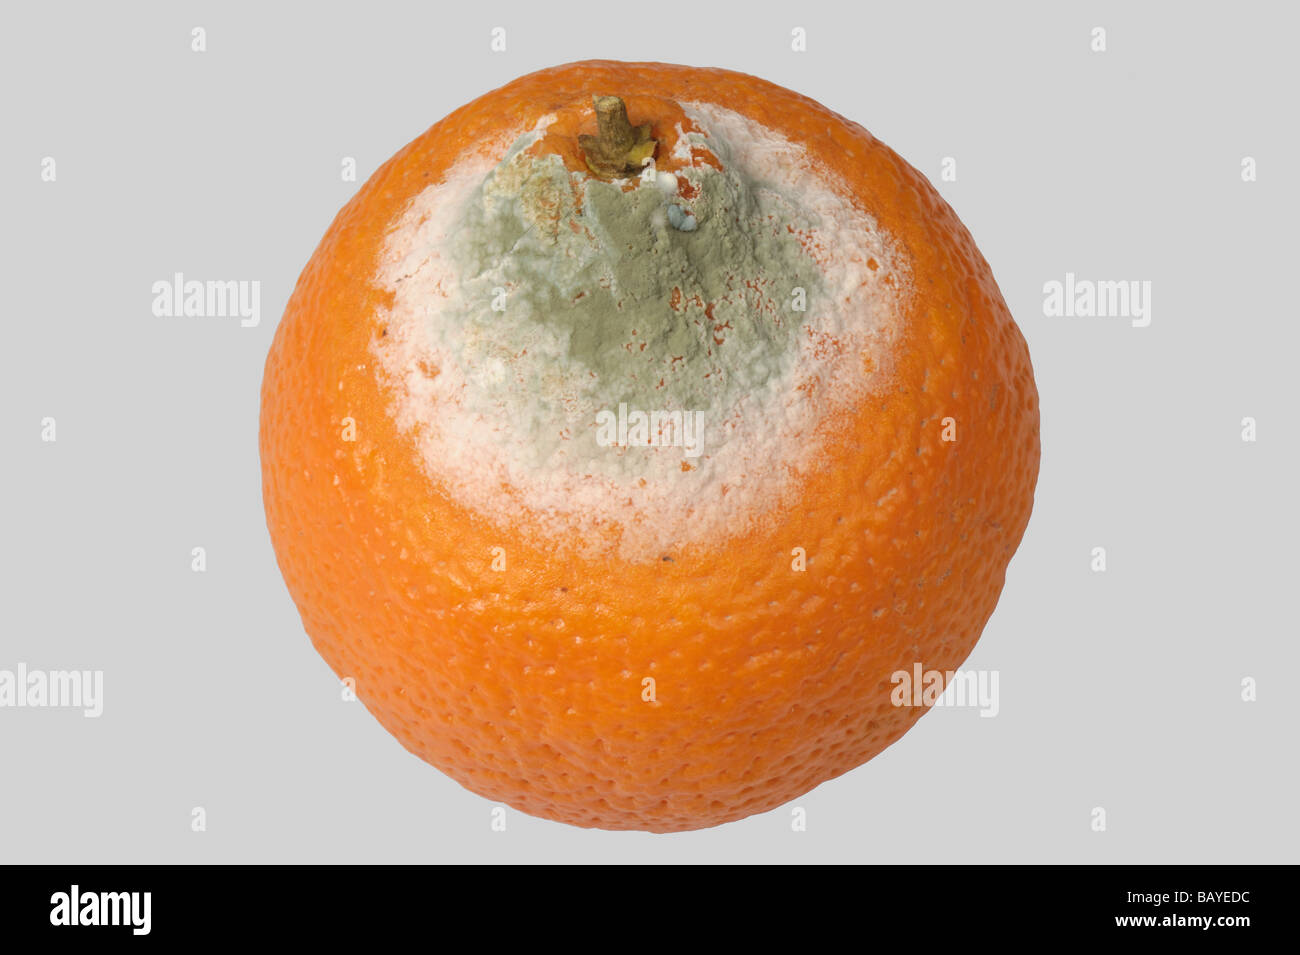 Moule verte Penicillium digitatum sur un stockage des fruits orange Banque D'Images